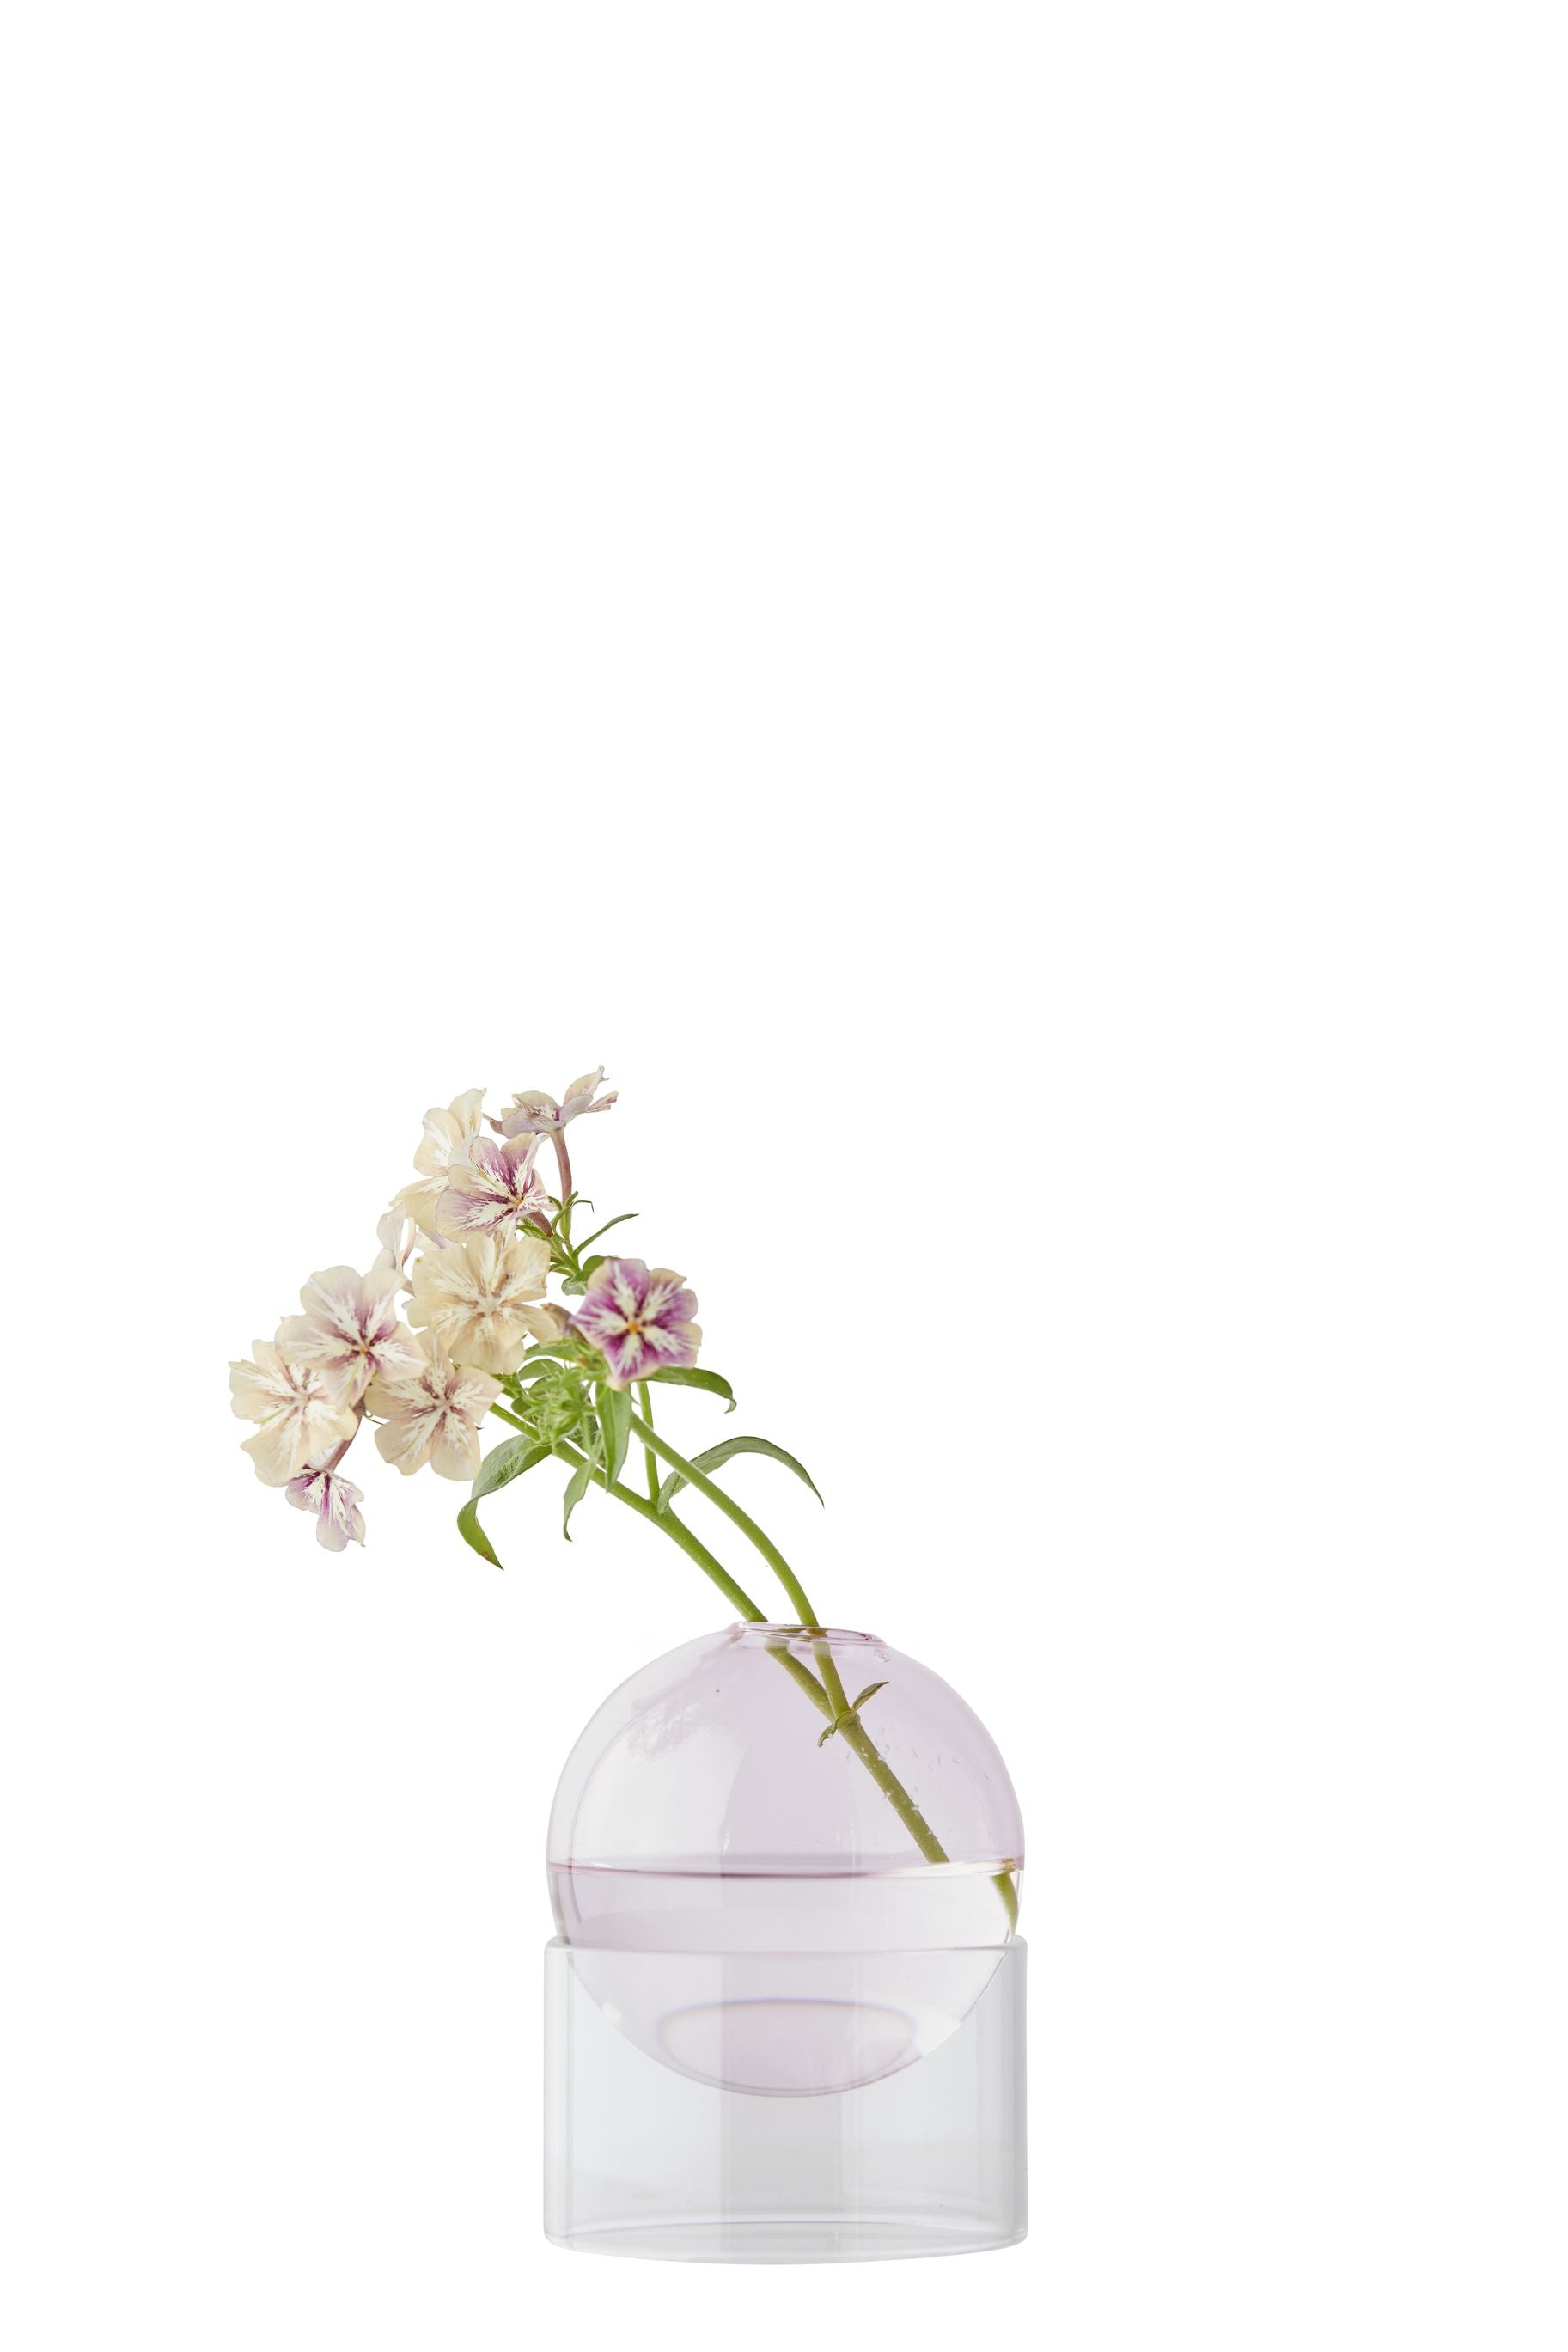 Studio sur le vase à bulles de fleur debout 10 cm, rose